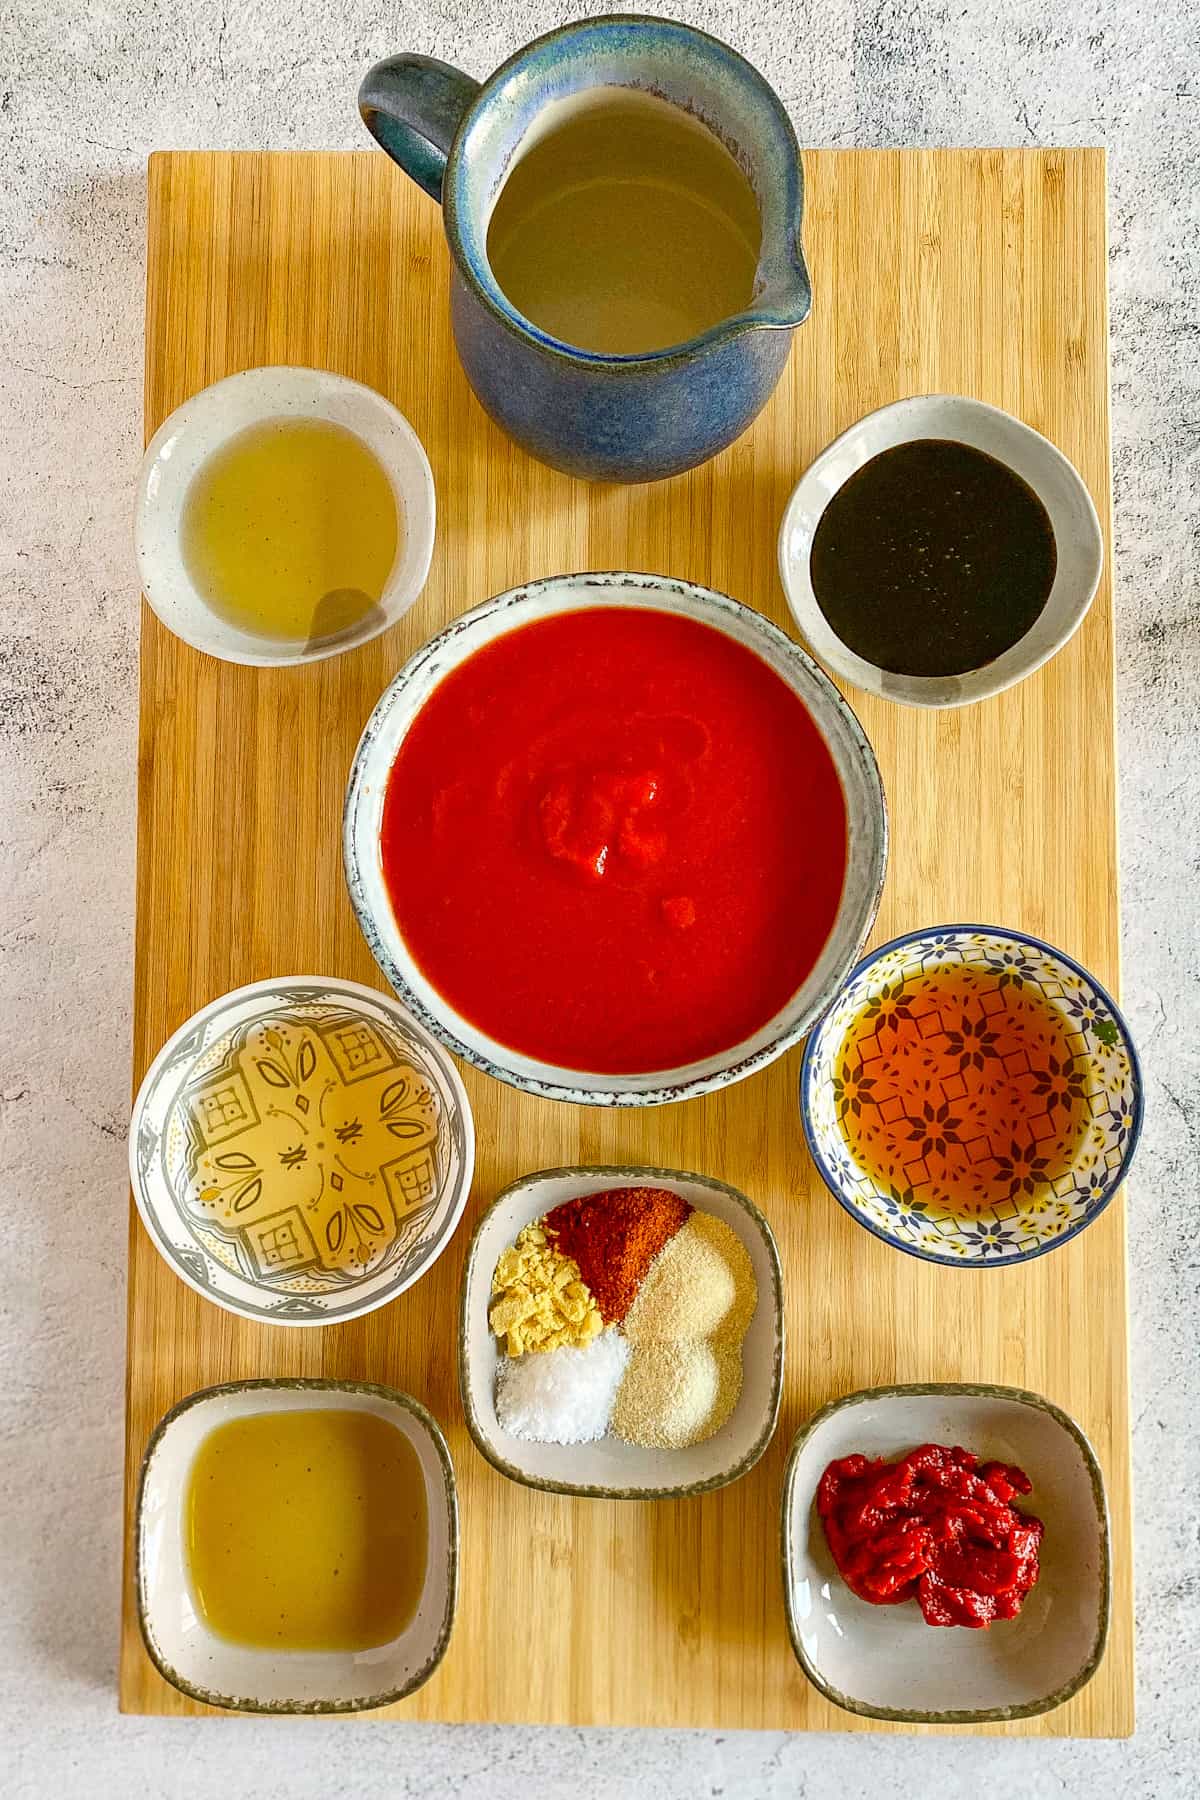 Ingredients to make vegan bbq sauce.